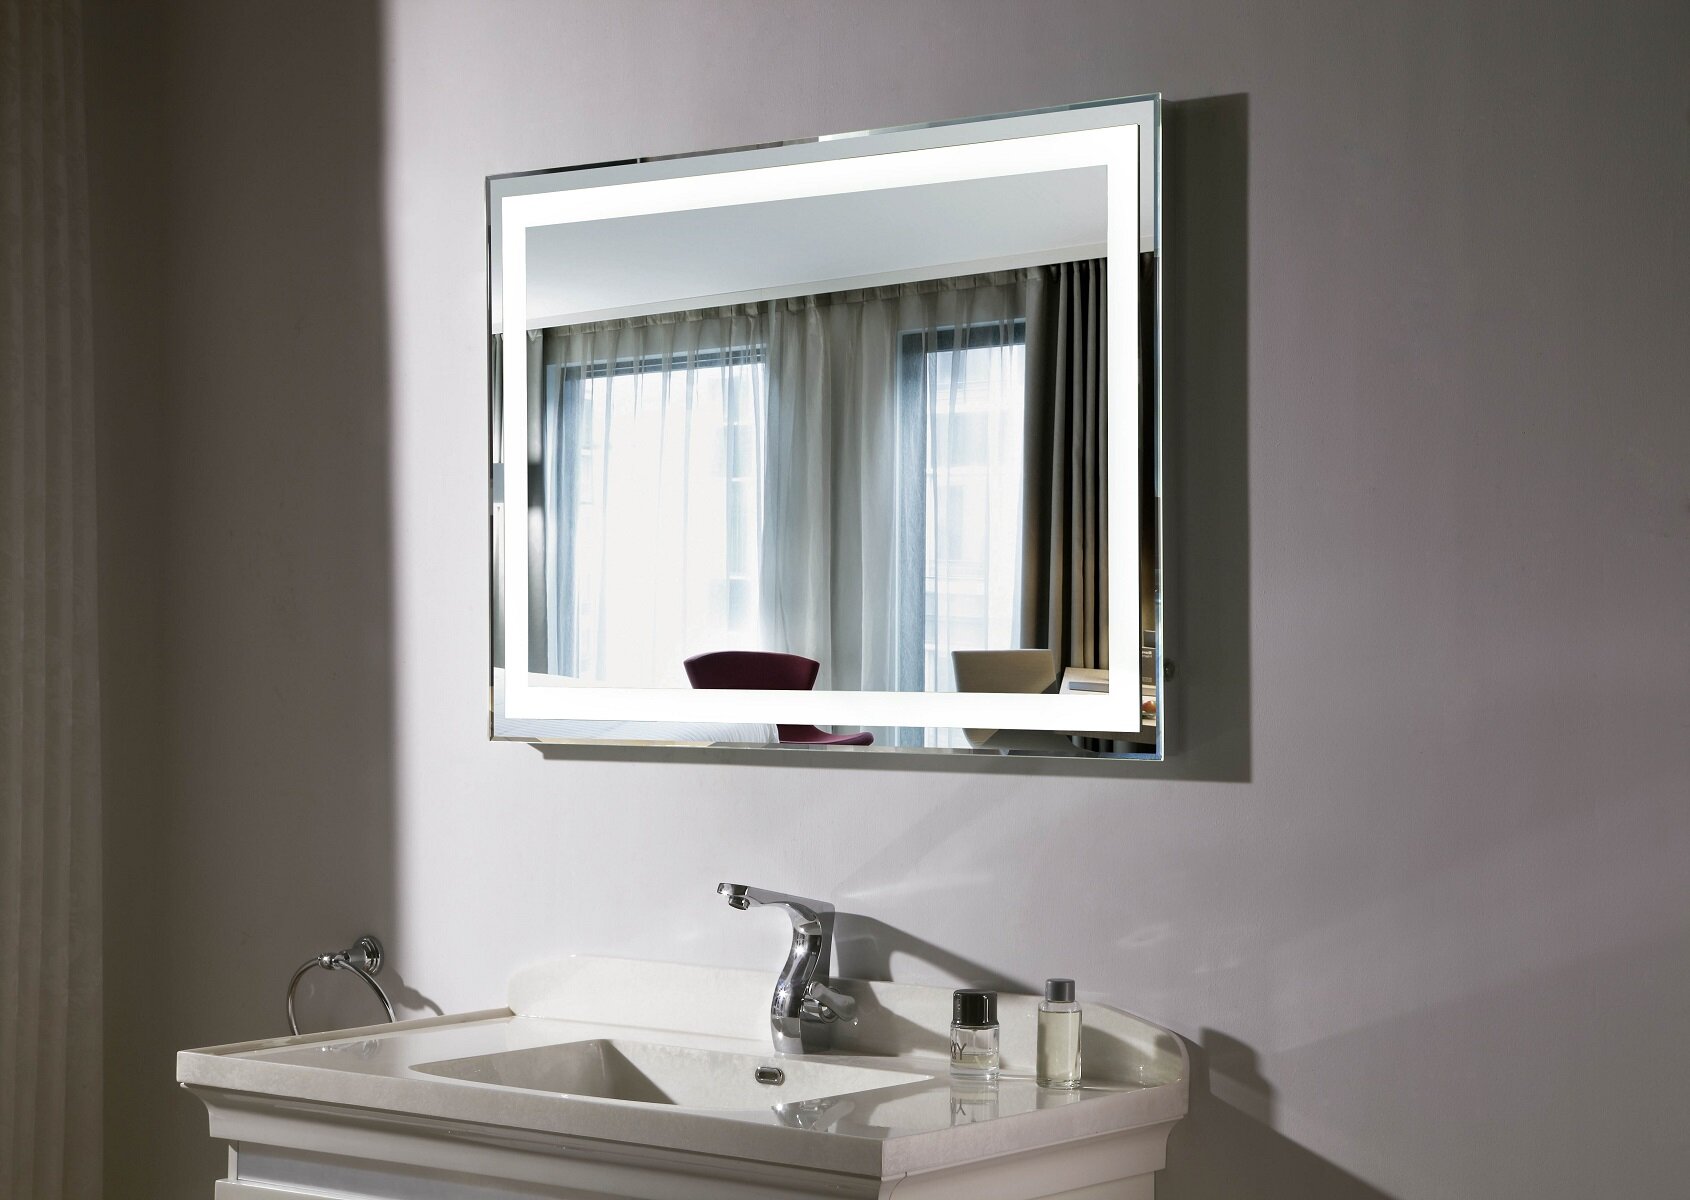 lighted-vanity-bathroom-mirror-led-budapest-iiI.jpg